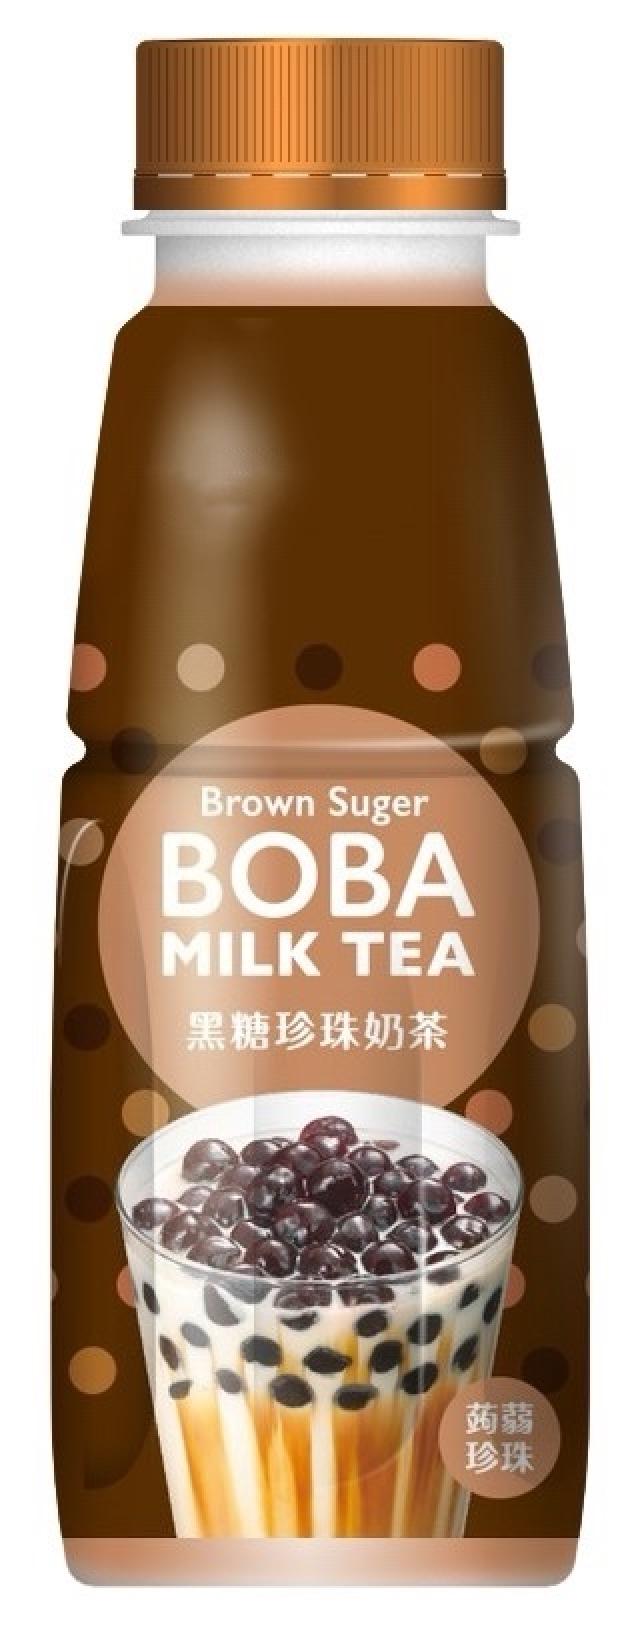 Brown Sugar Boba Milk Tea - Brown Sugar Flavor